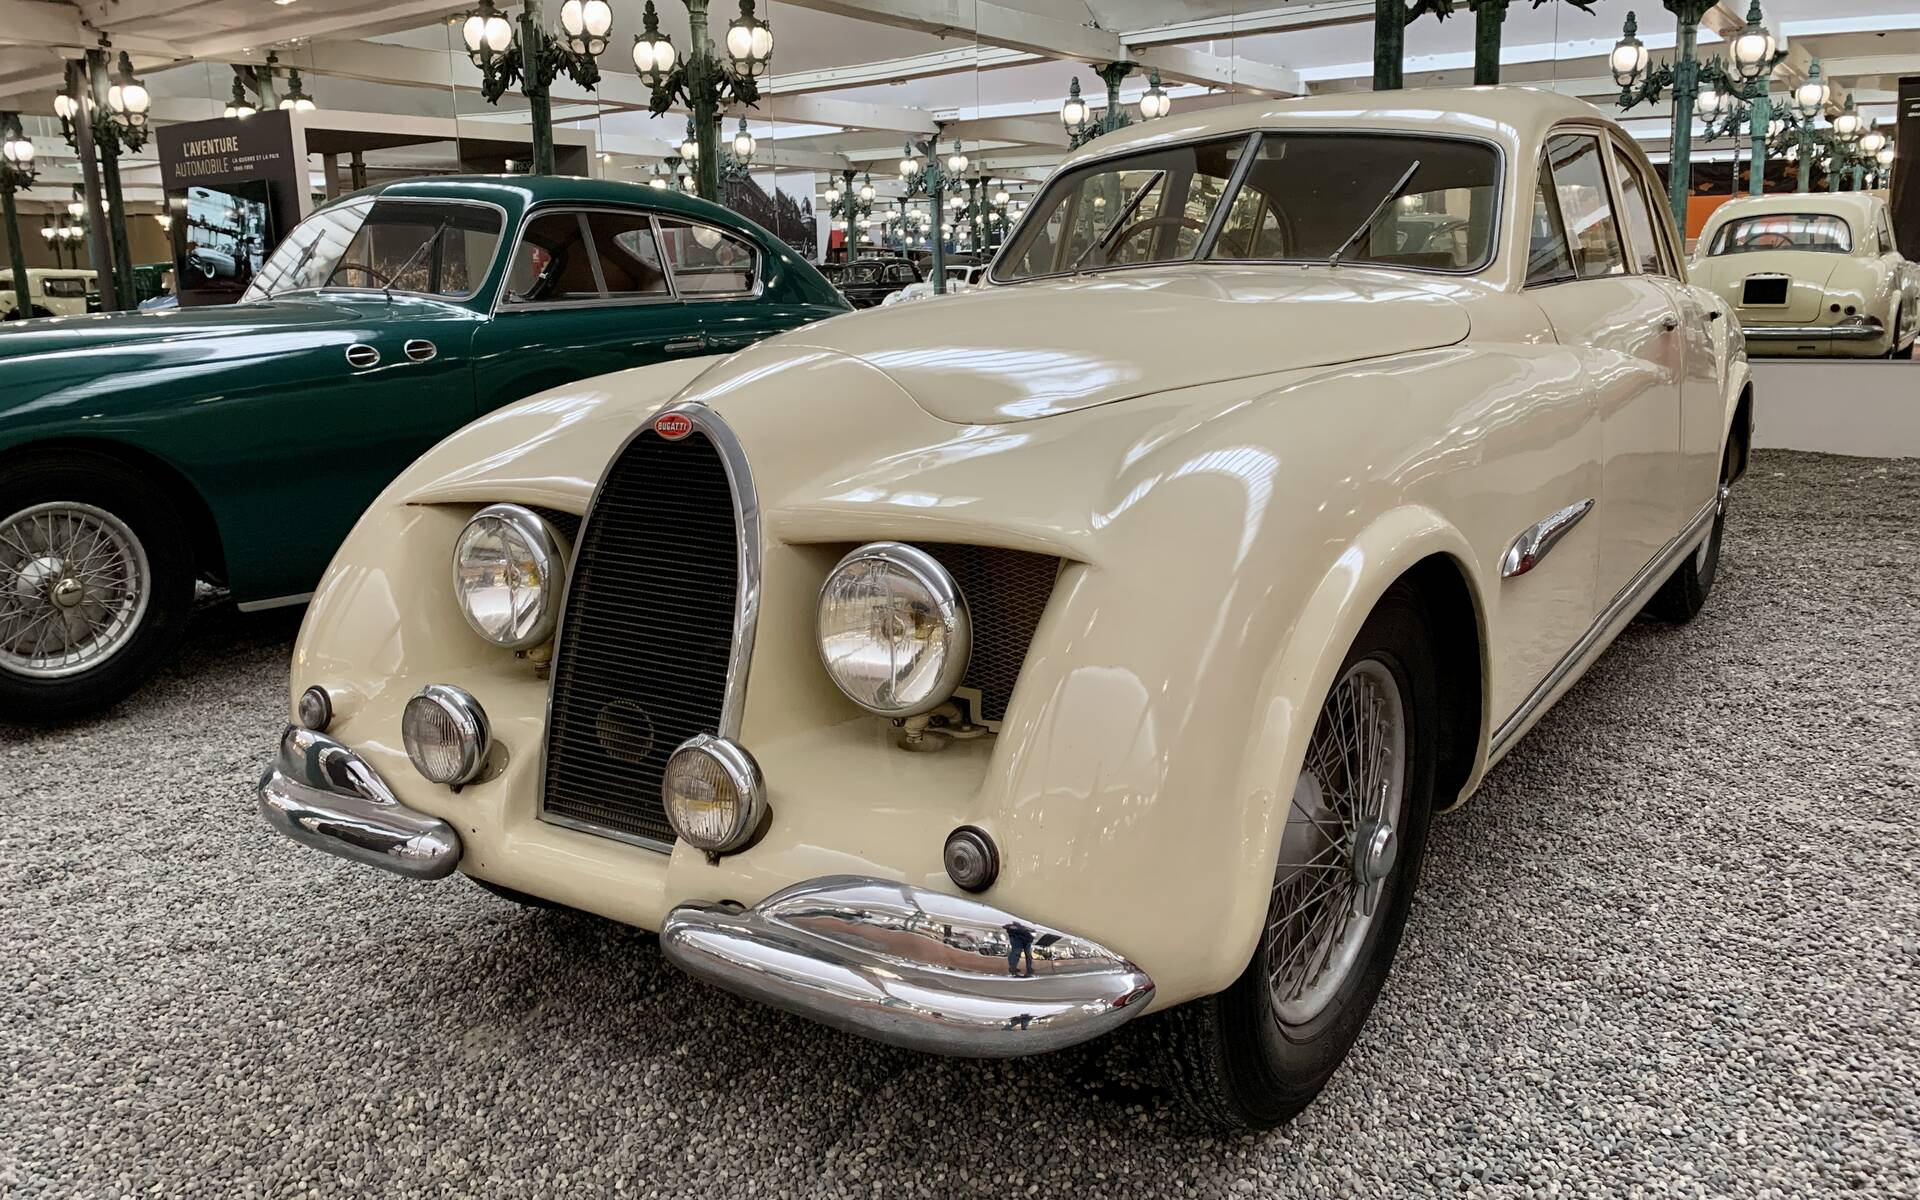 En photos : une centaine de Bugatti réunies dans un même musée 503070-en-photos-des-dizaines-de-bugatti-reunies-dans-un-meme-musee